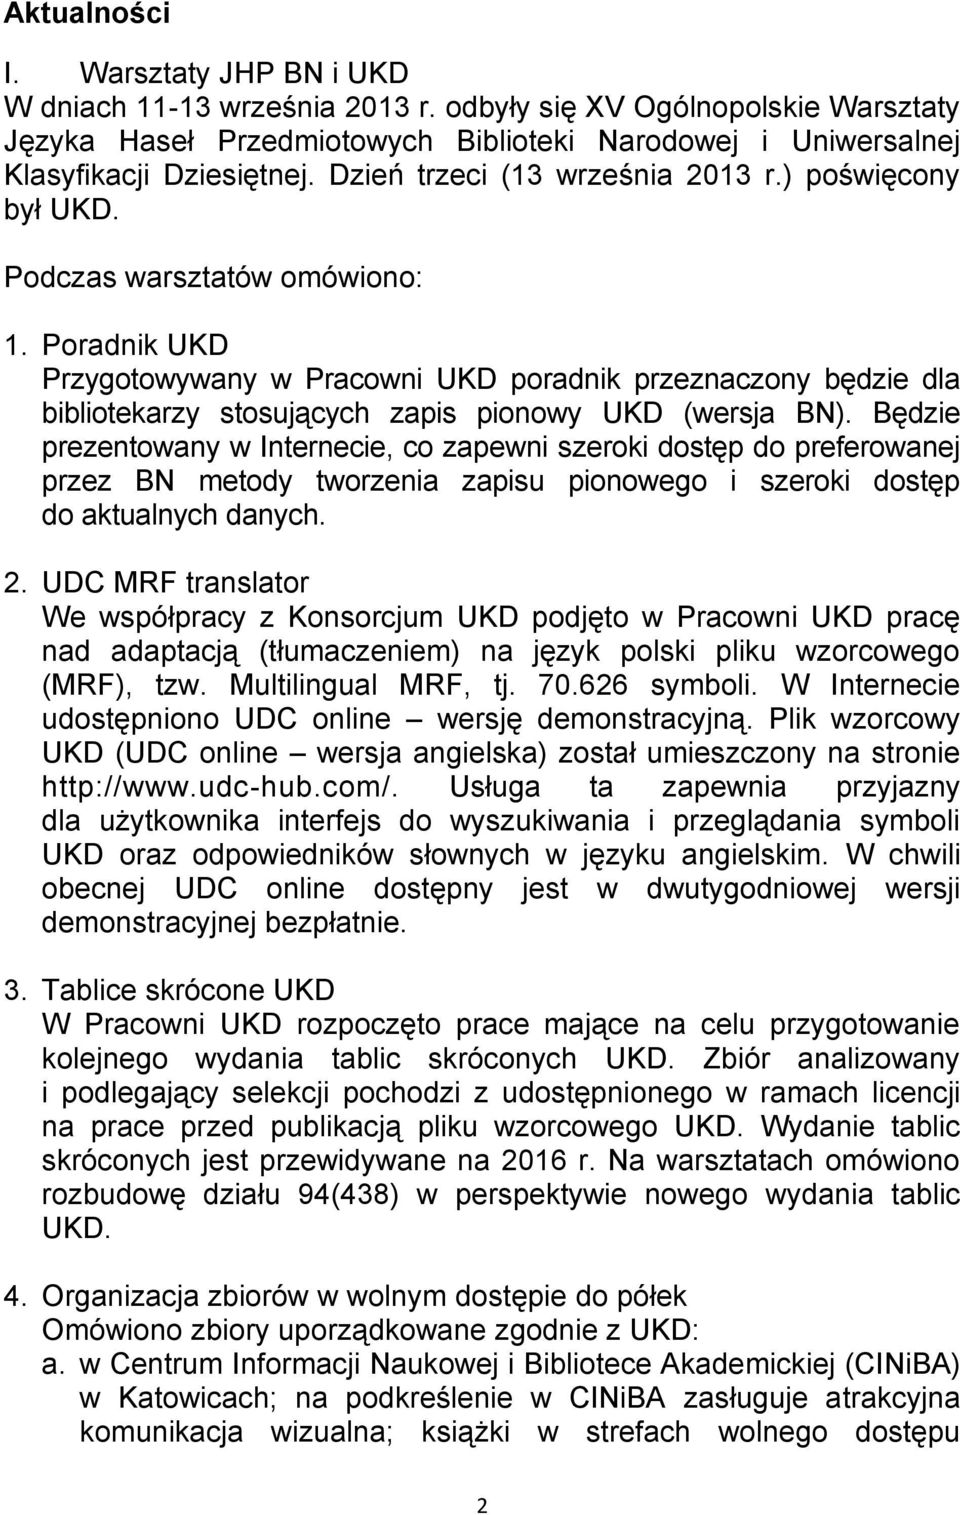 Poradnik UKD Przygotowywany w Pracowni UKD poradnik przeznaczony będzie dla bibliotekarzy stosujących zapis pionowy UKD (wersja BN).